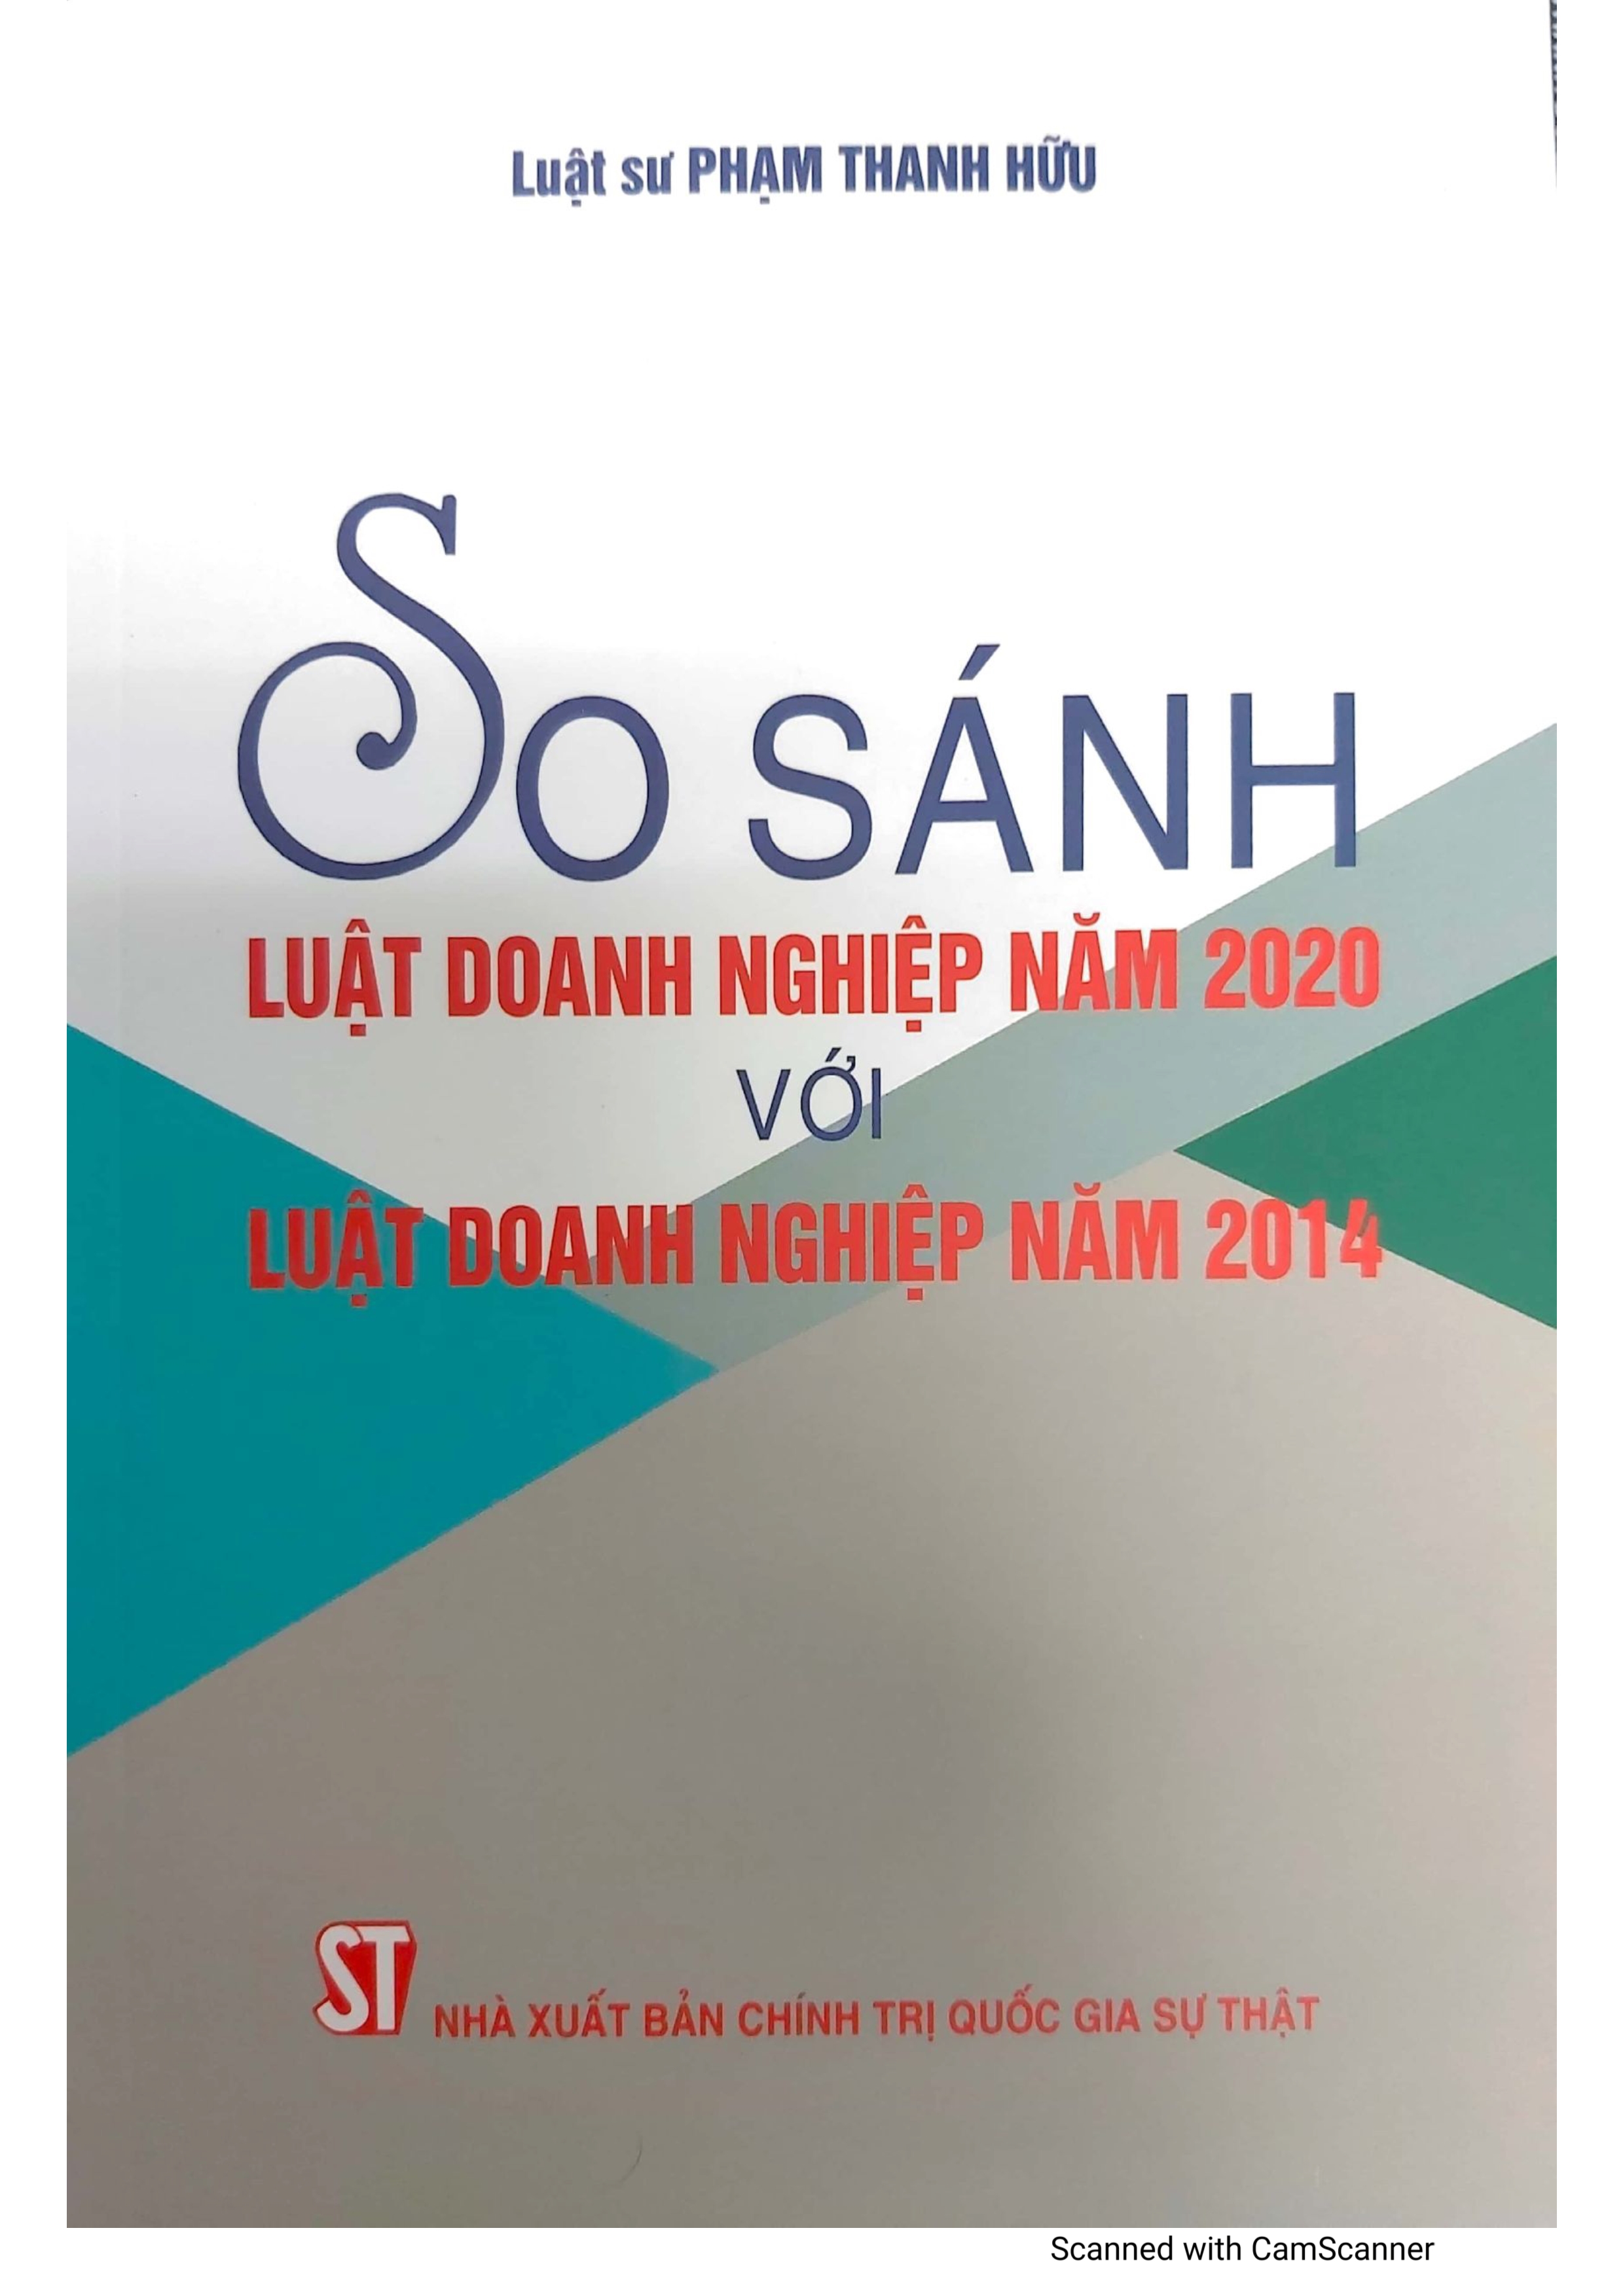 SO SÁNH LUẬT DOANH NGHIỆP NĂM 2020 VỚI LUẬT DOANH NGHIỆP 2014